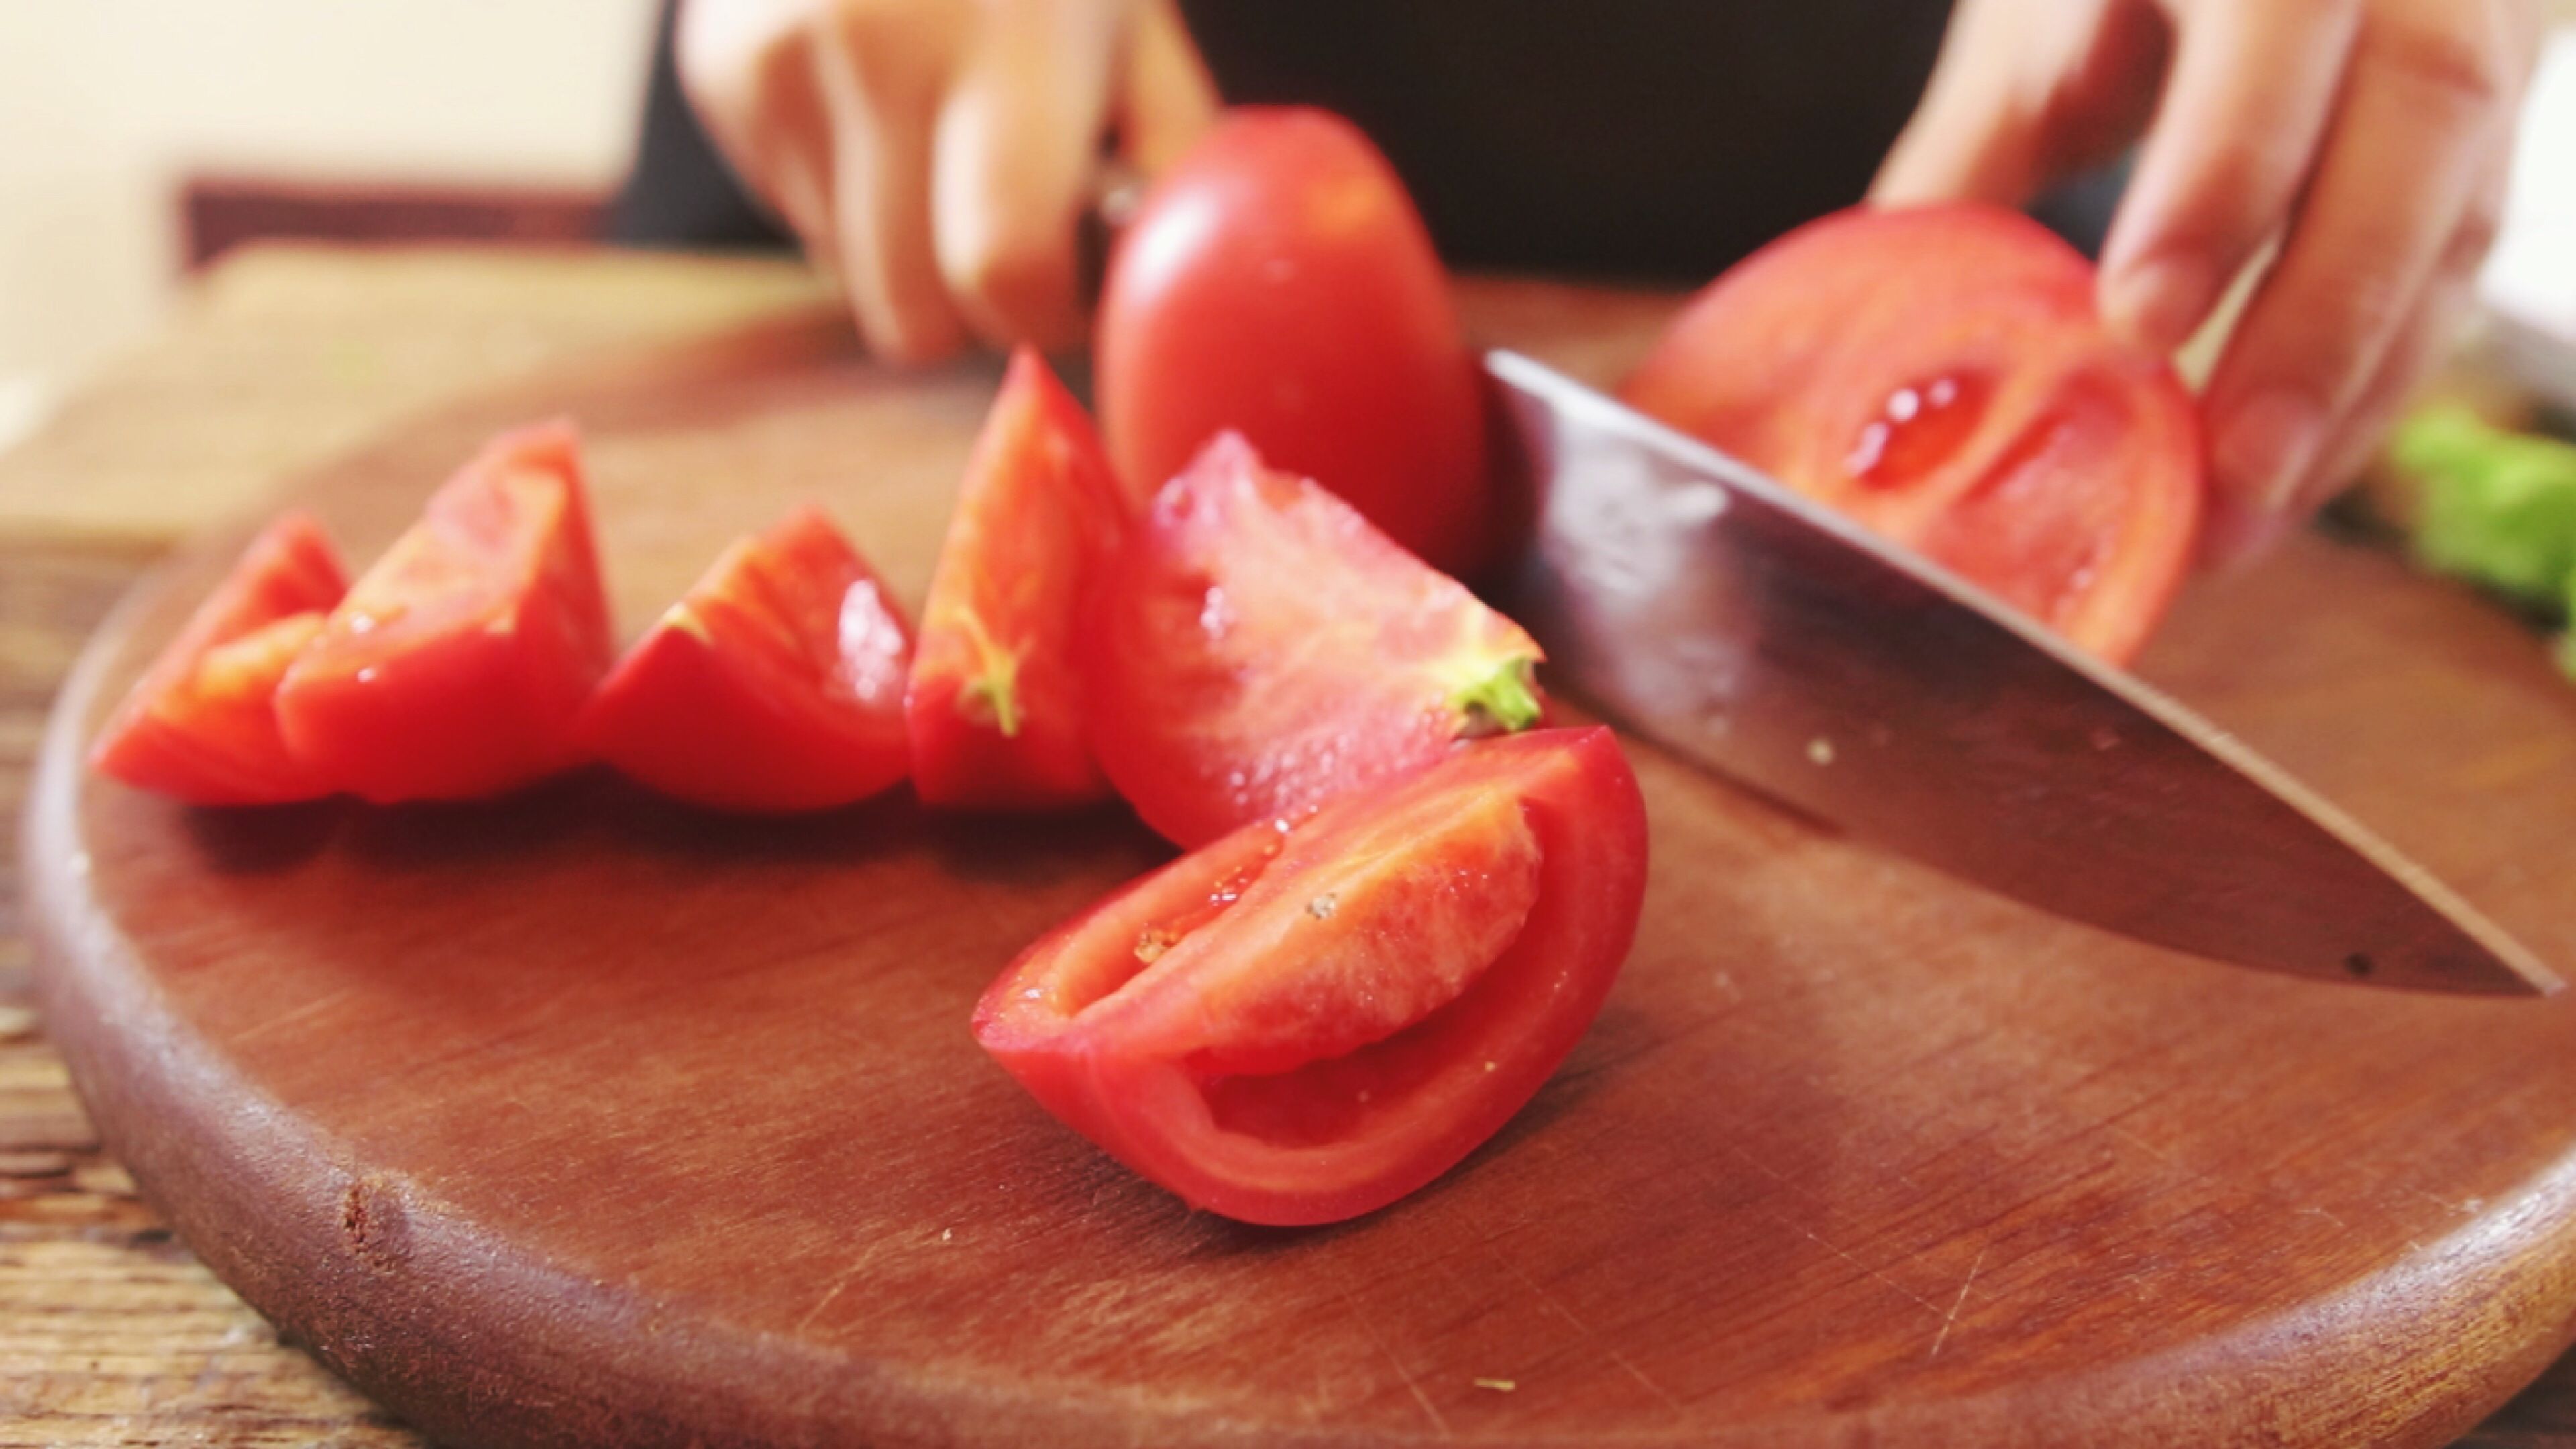 吃一口胜过8斤番茄,呼吸科医生:肺不好的人多吃,慢慢排出肺毒